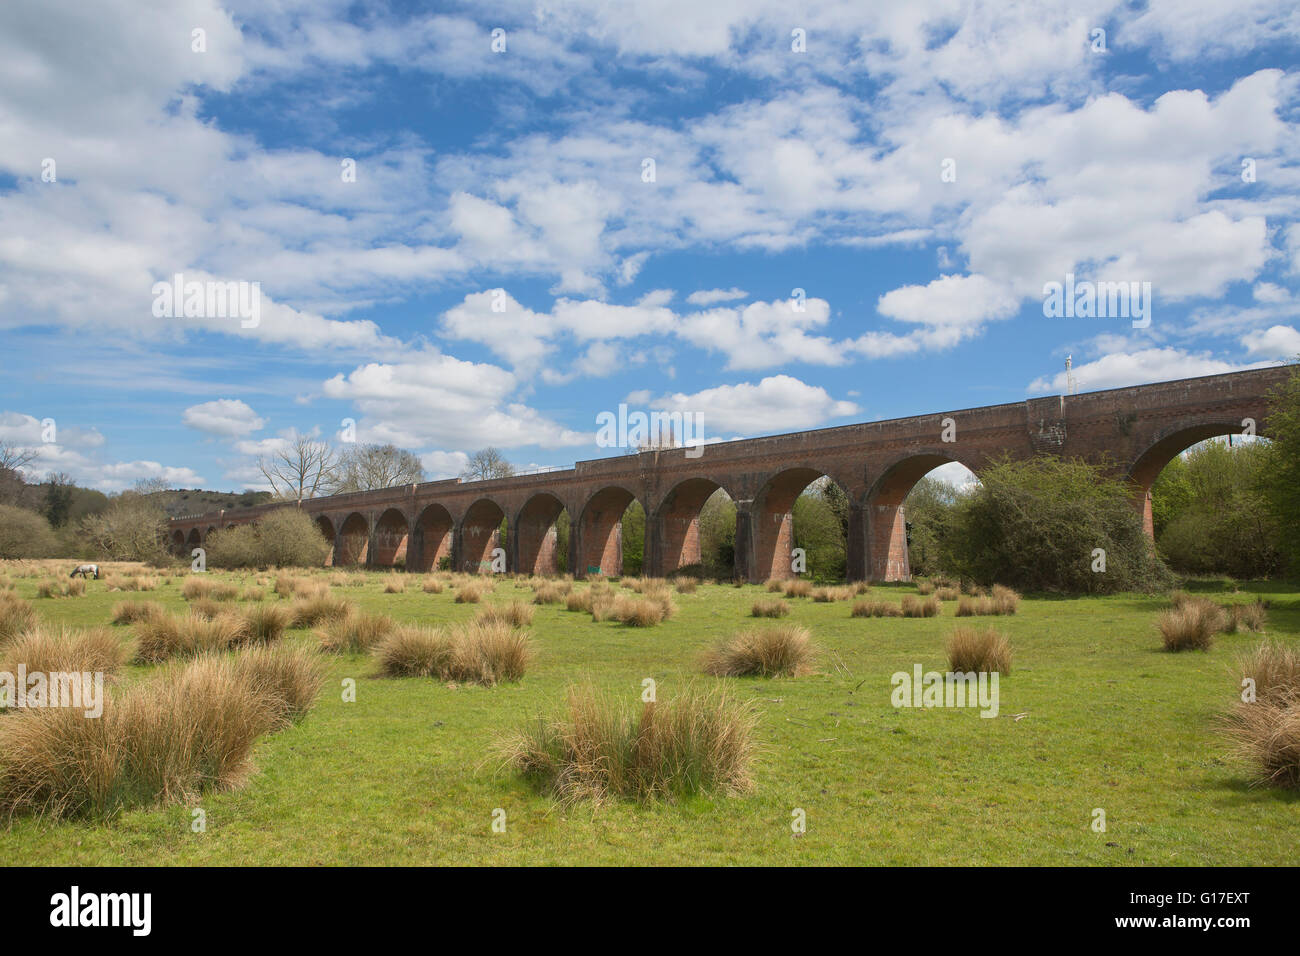 Hockley stillgelegten Eisenbahnviadukt über einem Tal in der Nähe von Winchester in Hampshire. Jetzt Teil von National Cycle route 23. Überspannt den Fluss Itchen Stockfoto